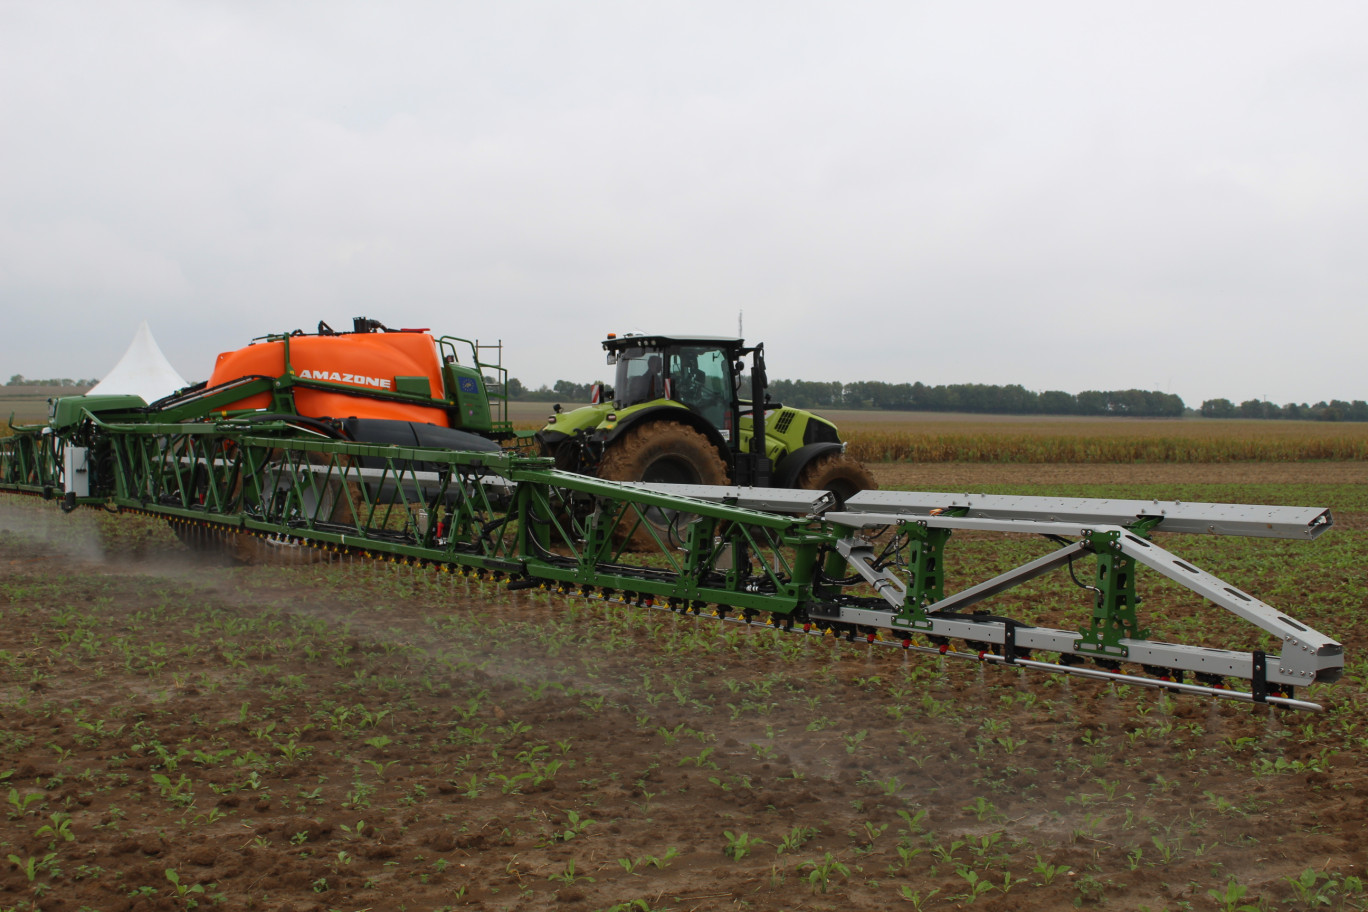 Le Smart Spraying Solution démontrée à Courbes permettrait d'économiser jusqu'à 70% d'herbicides.